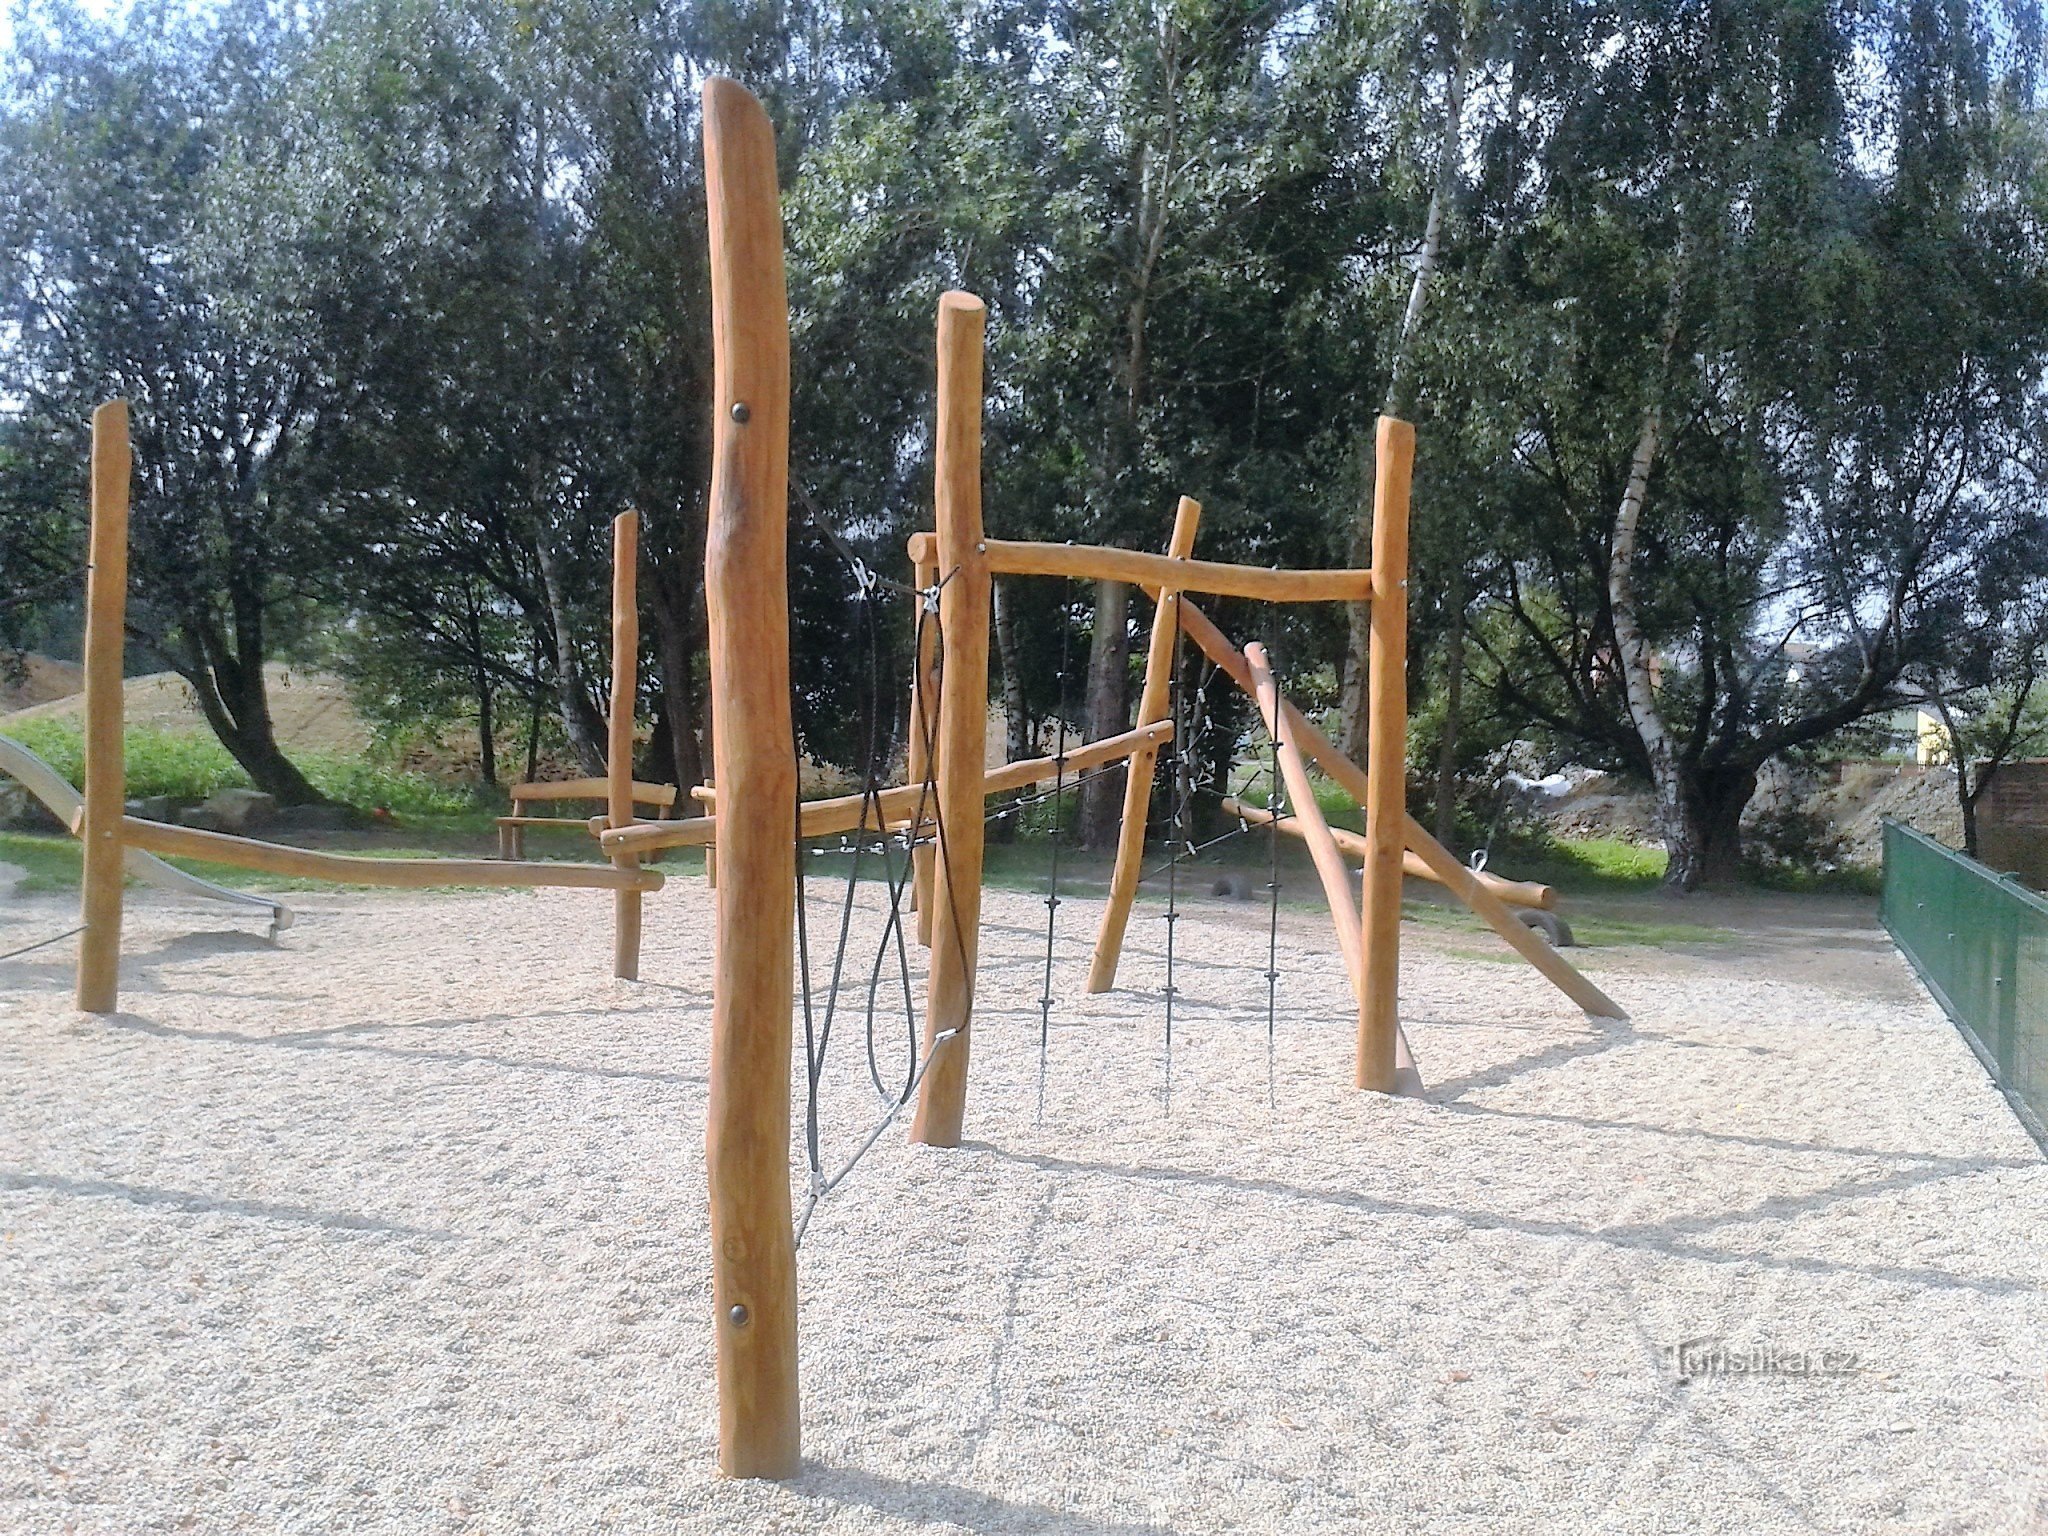 Zábřeh - Oborník lekplats (ny för alla kategorier av barn)